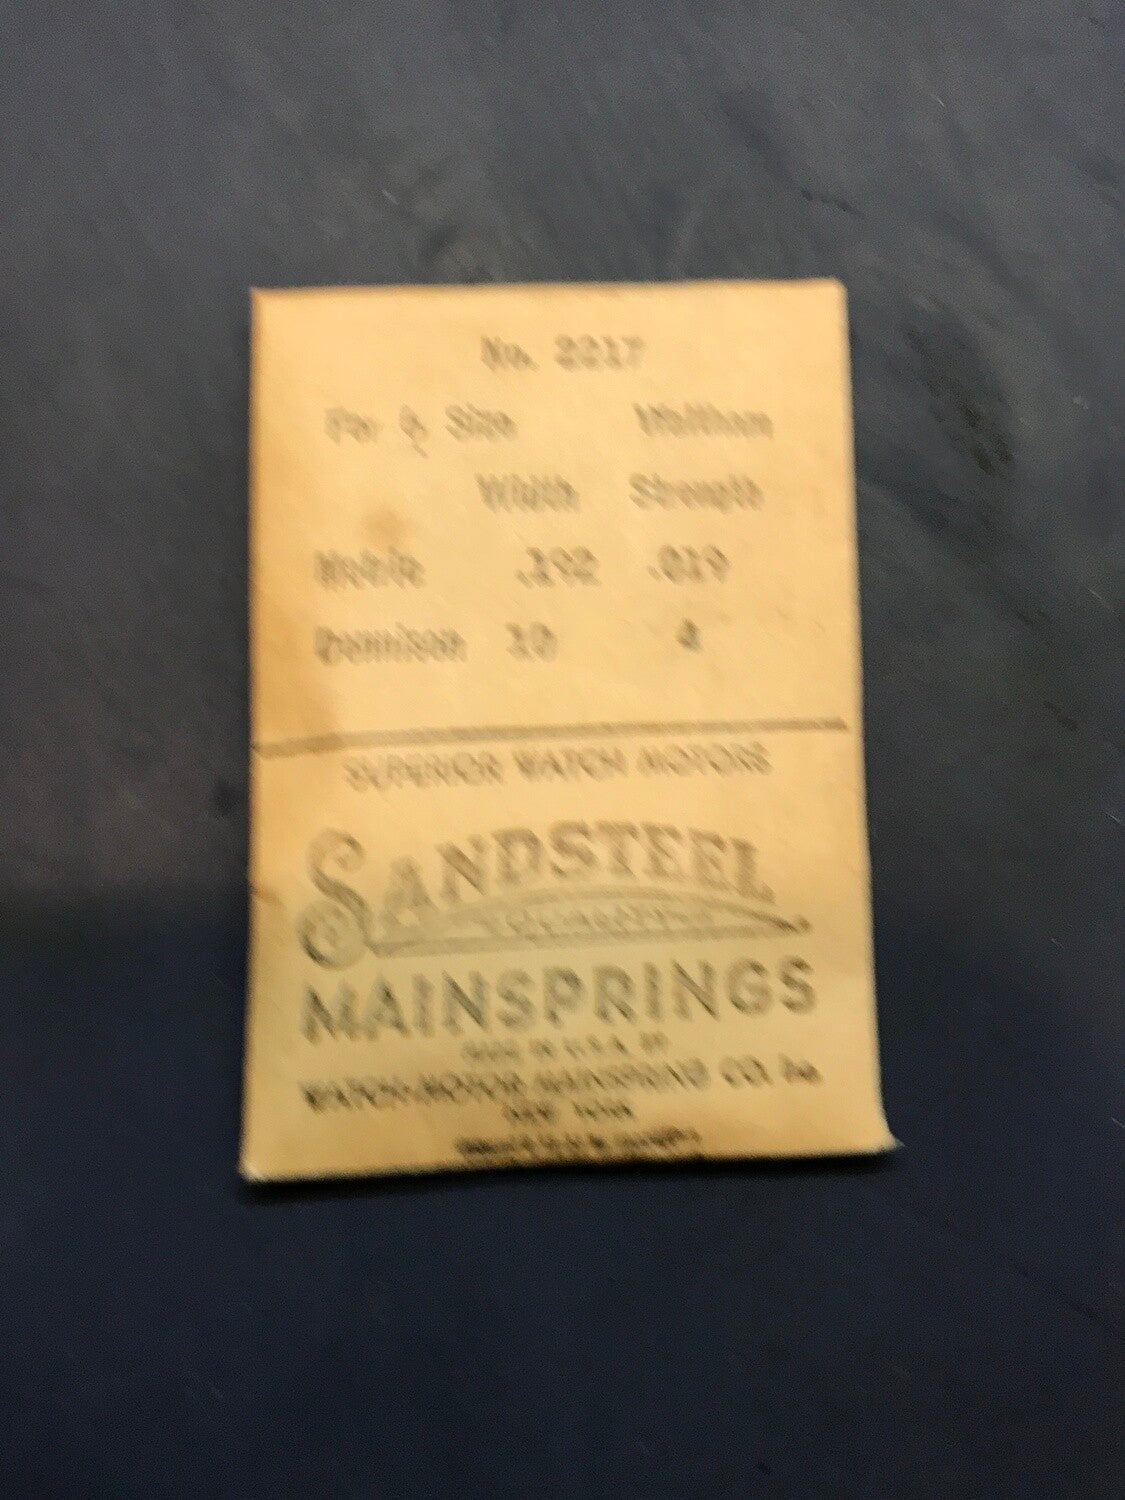 Sandsteel Mainspring for 6s Waltham No. 2217 - Steel